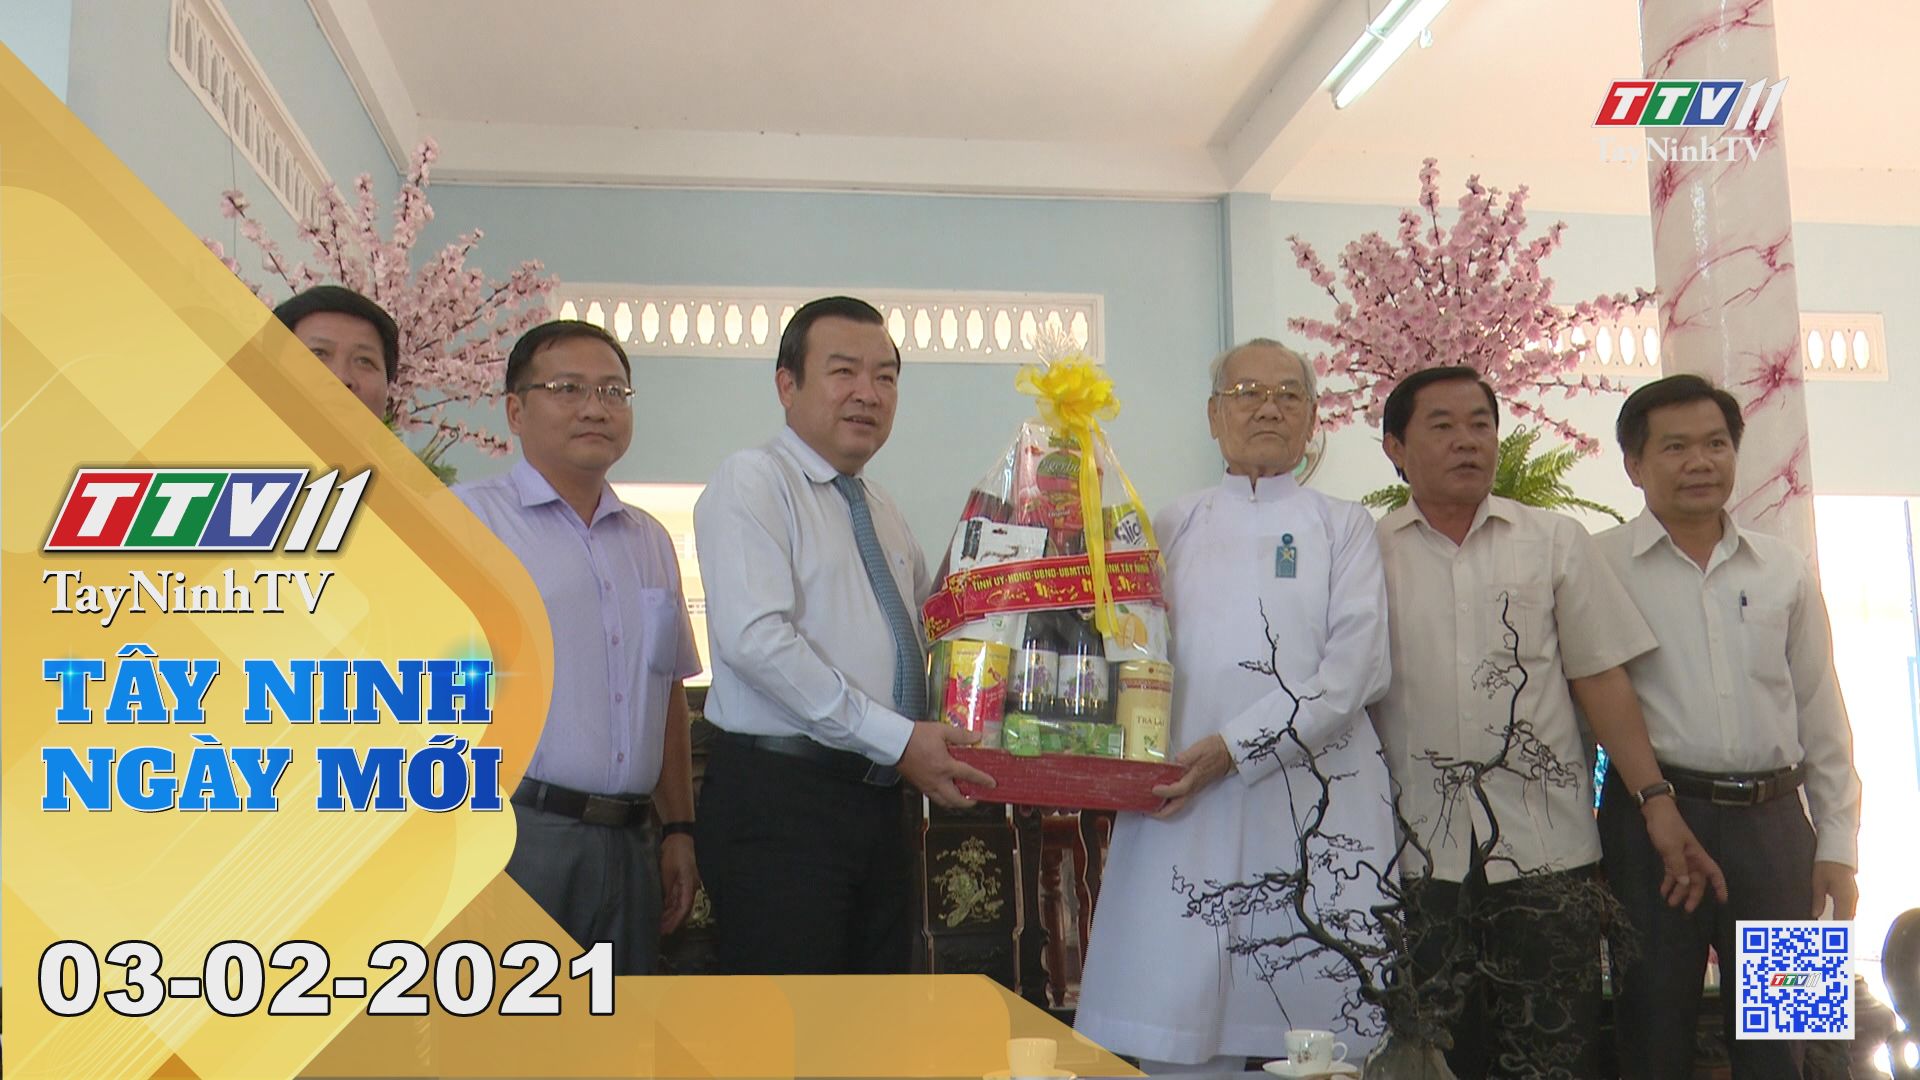 Tây Ninh Ngày Mới 03-02-2021 | Tin tức hôm nay | TayNinhTV